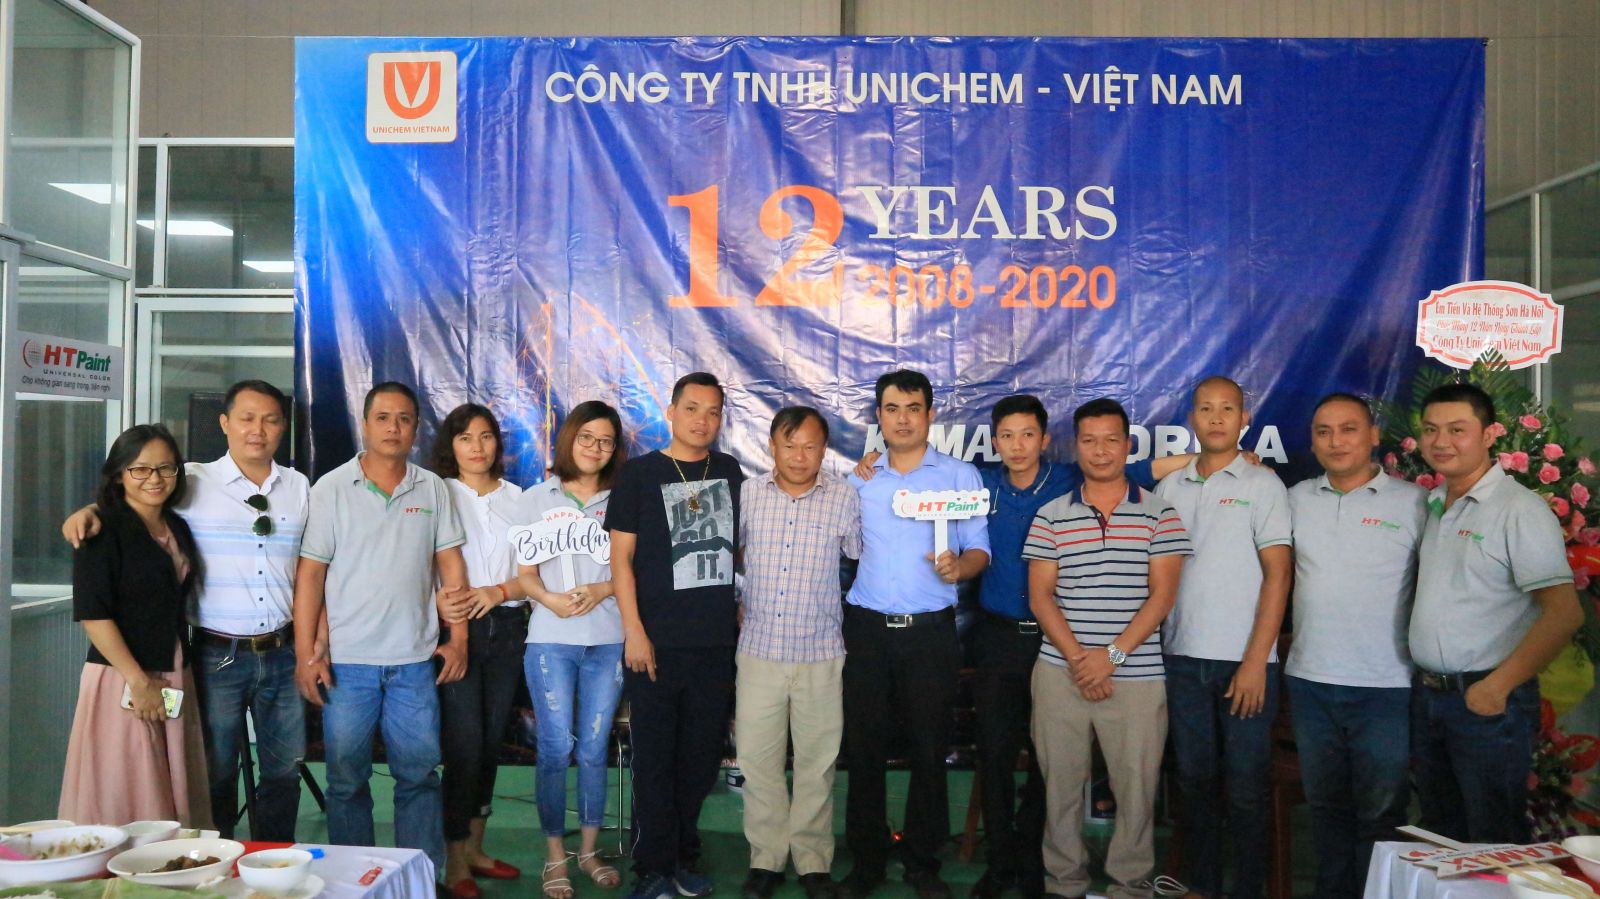 Unichem Việt Nam - 12 năm Không ngừng nỗ lực, Vững bước đi lên